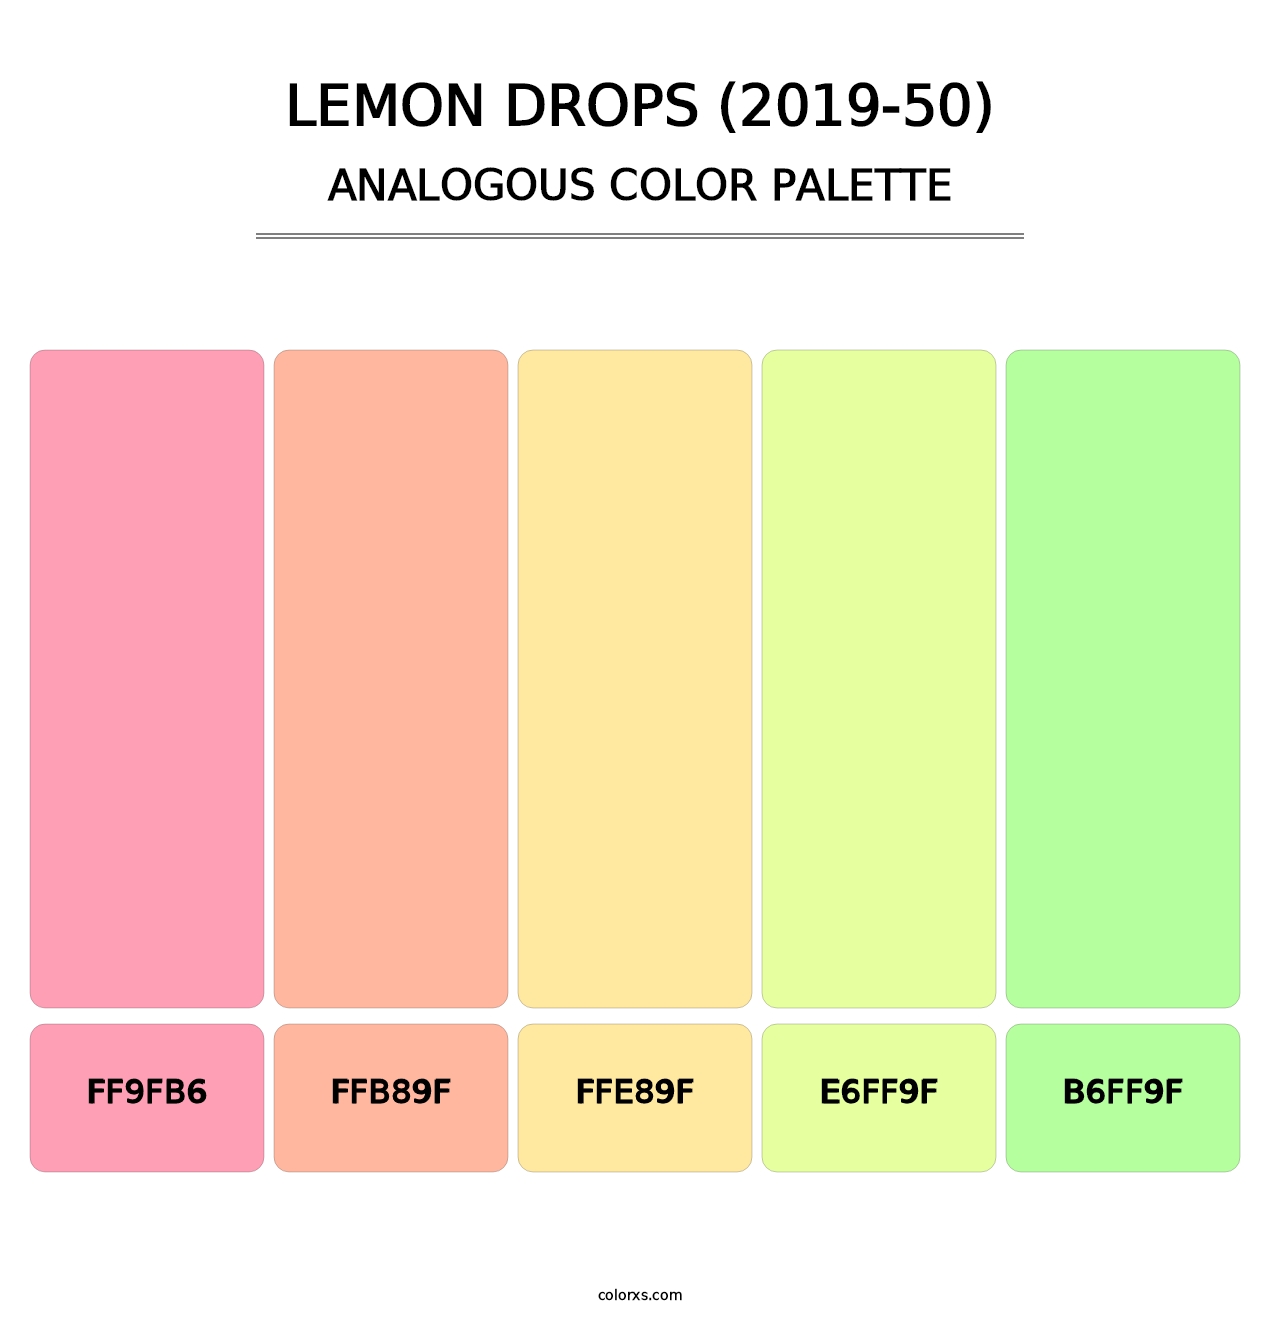 Lemon Drops (2019-50) - Analogous Color Palette